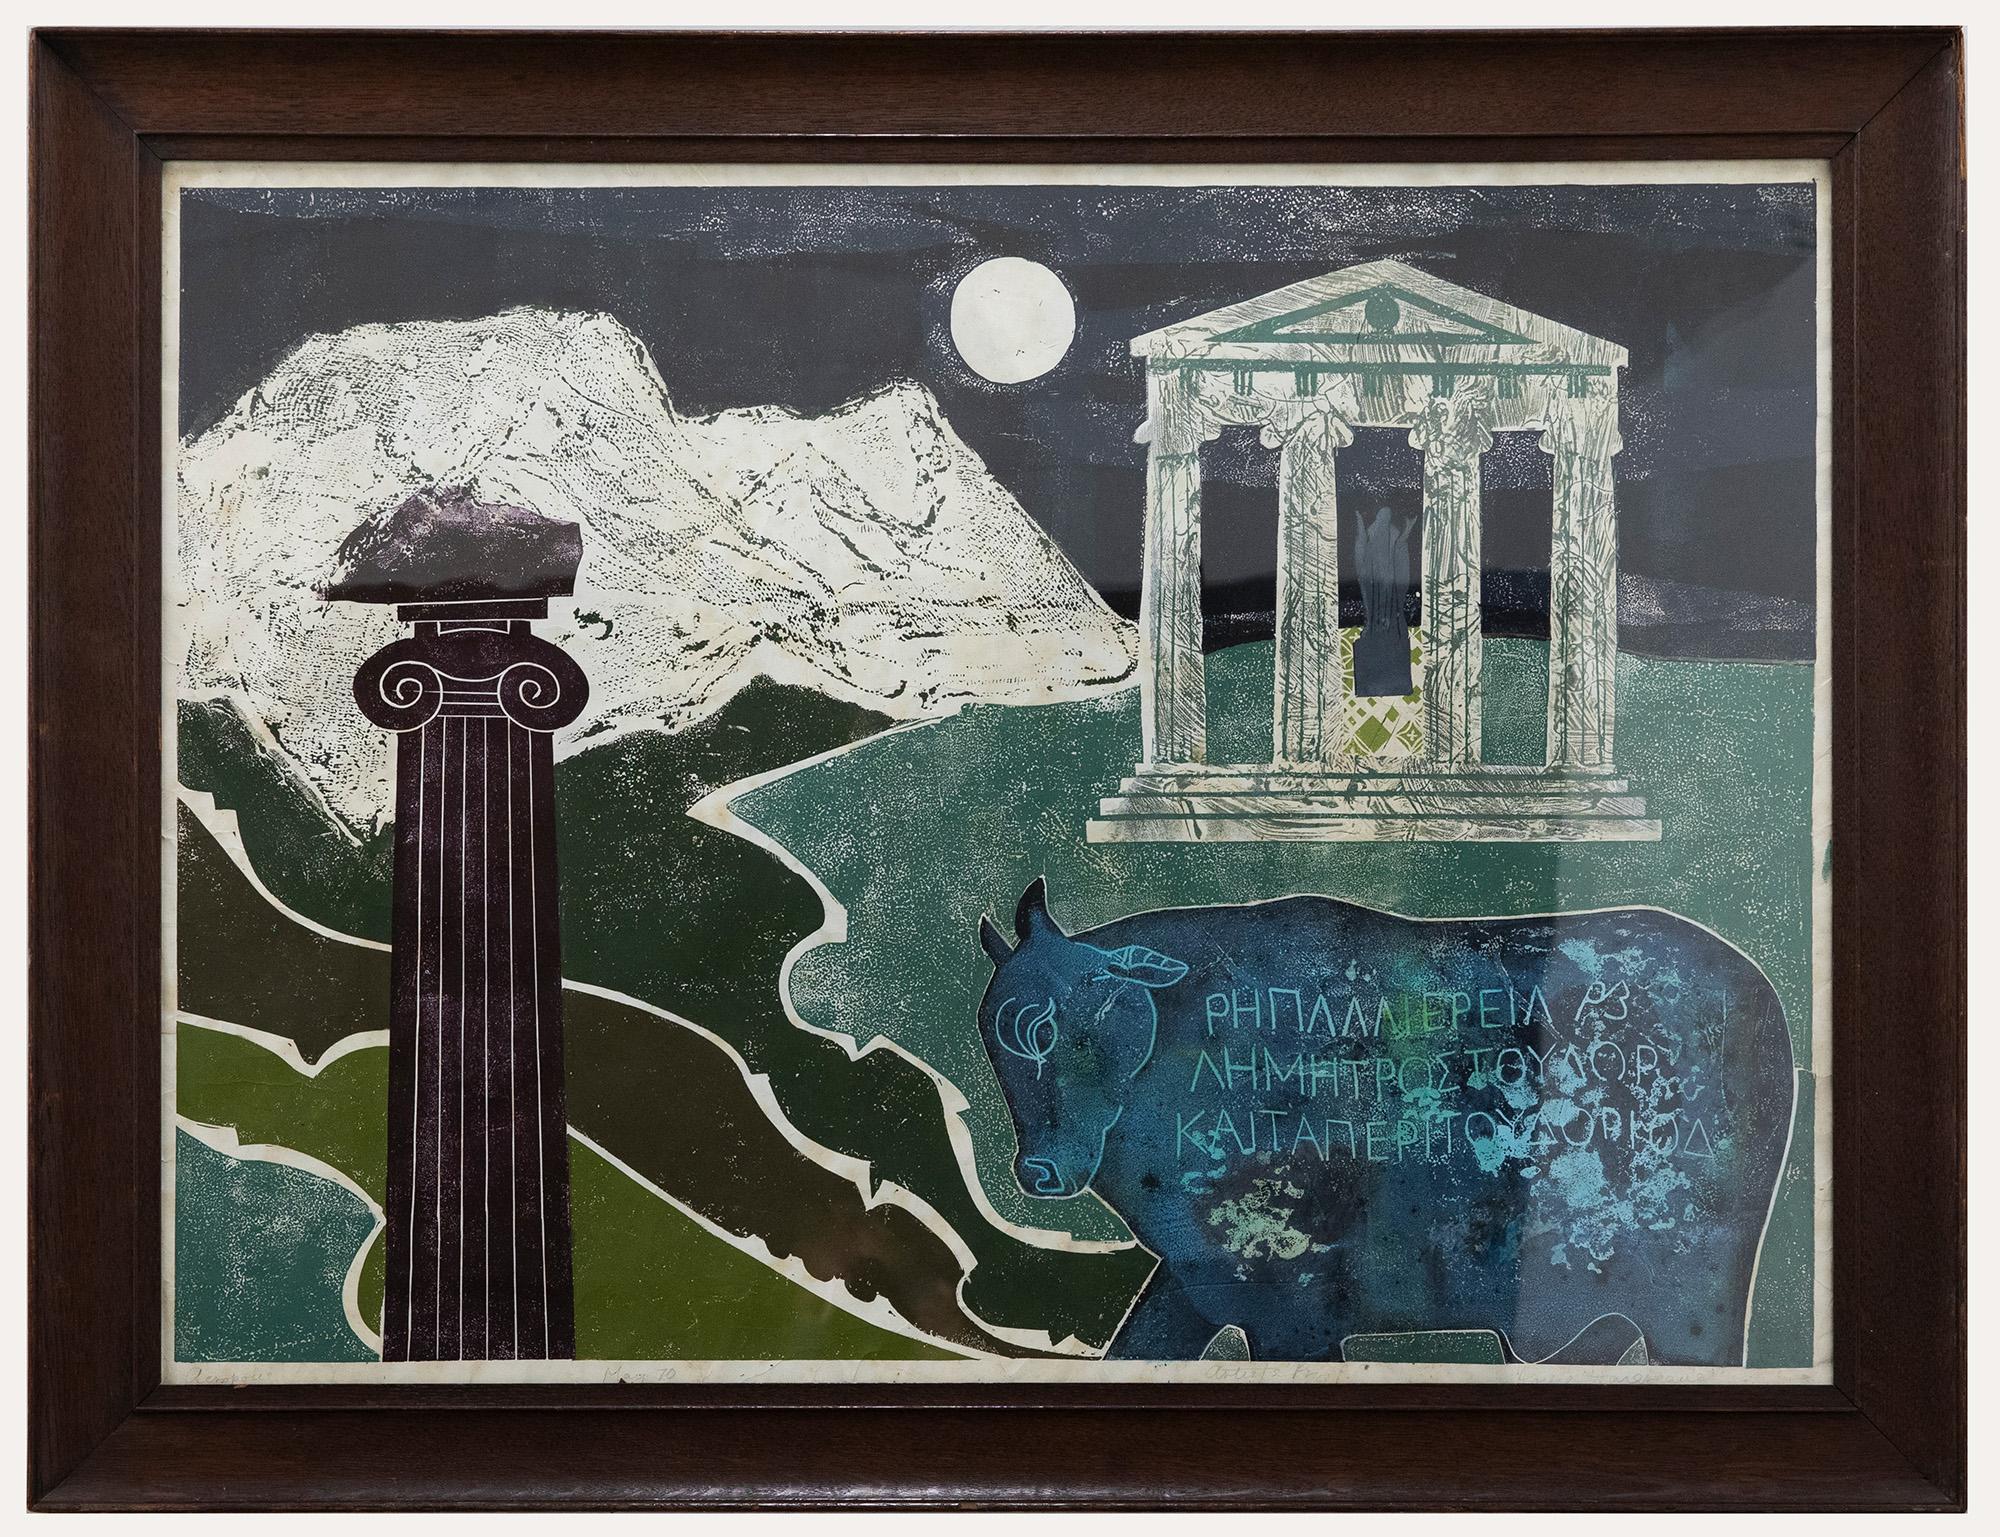 Eine fantasievolle Interpretation der Akropolis in Athen, Griechenland. Die Szene zeigt die Akropolis auf einem Hügel mit einer dorischen Säule und einem Stier im Vordergrund. Signiert, betitelt und datiert am unteren Rand. Künstlernachweis.